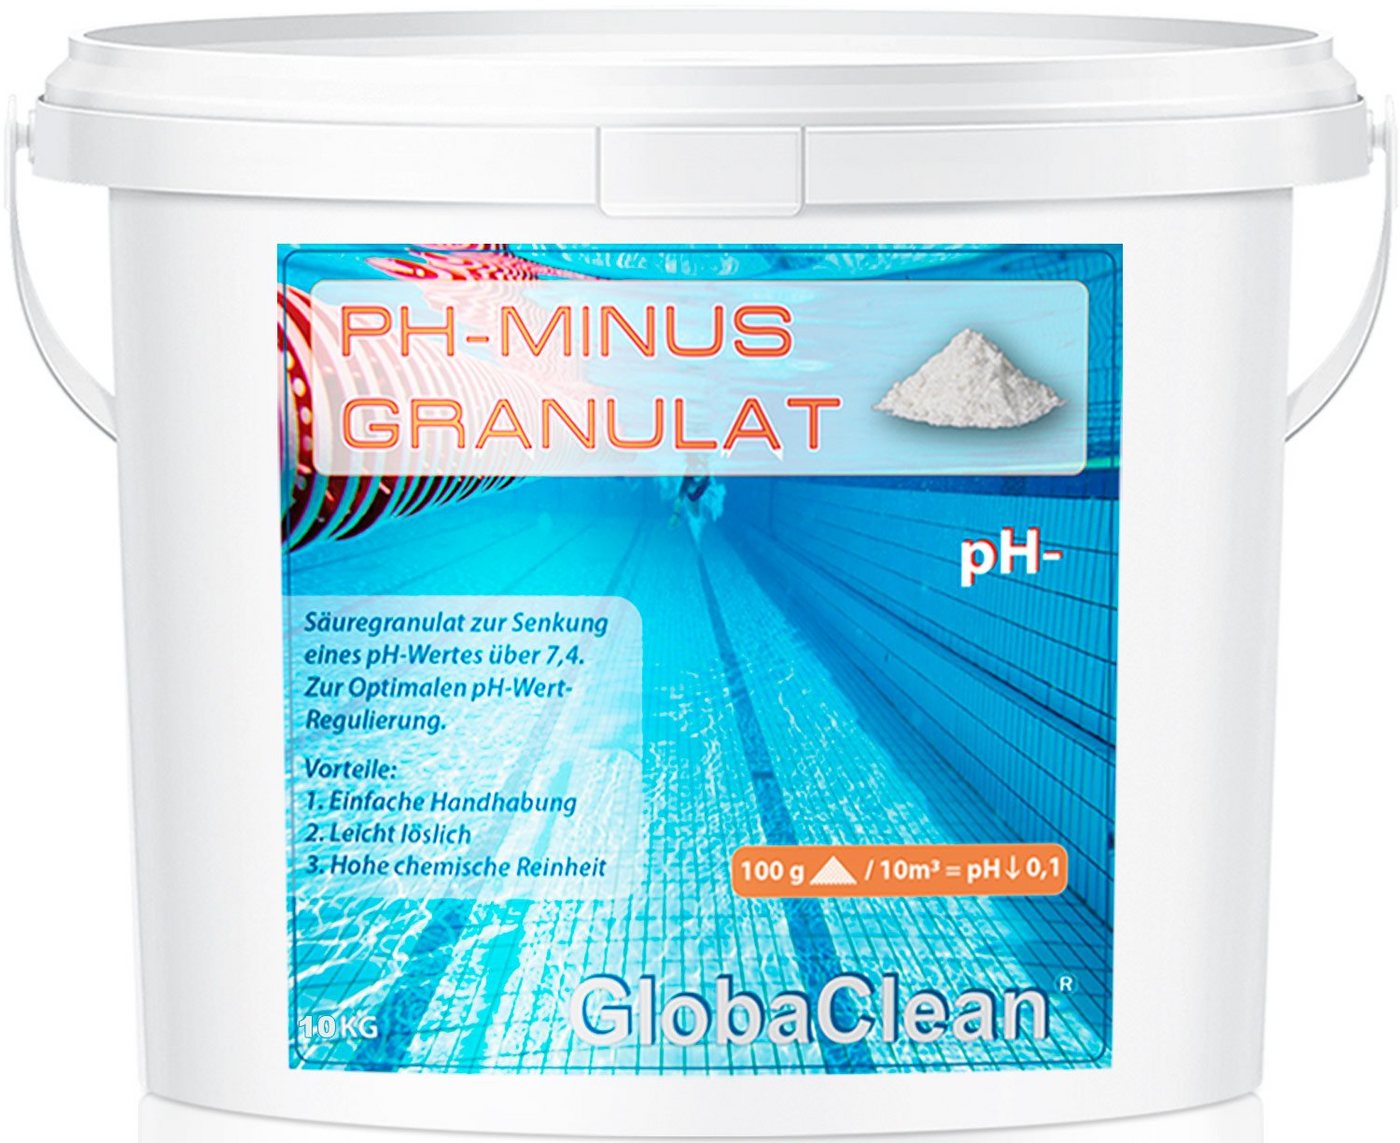 GlobaClean Poolpflege 10 kg pH-Minus Granulat von GlobaClean